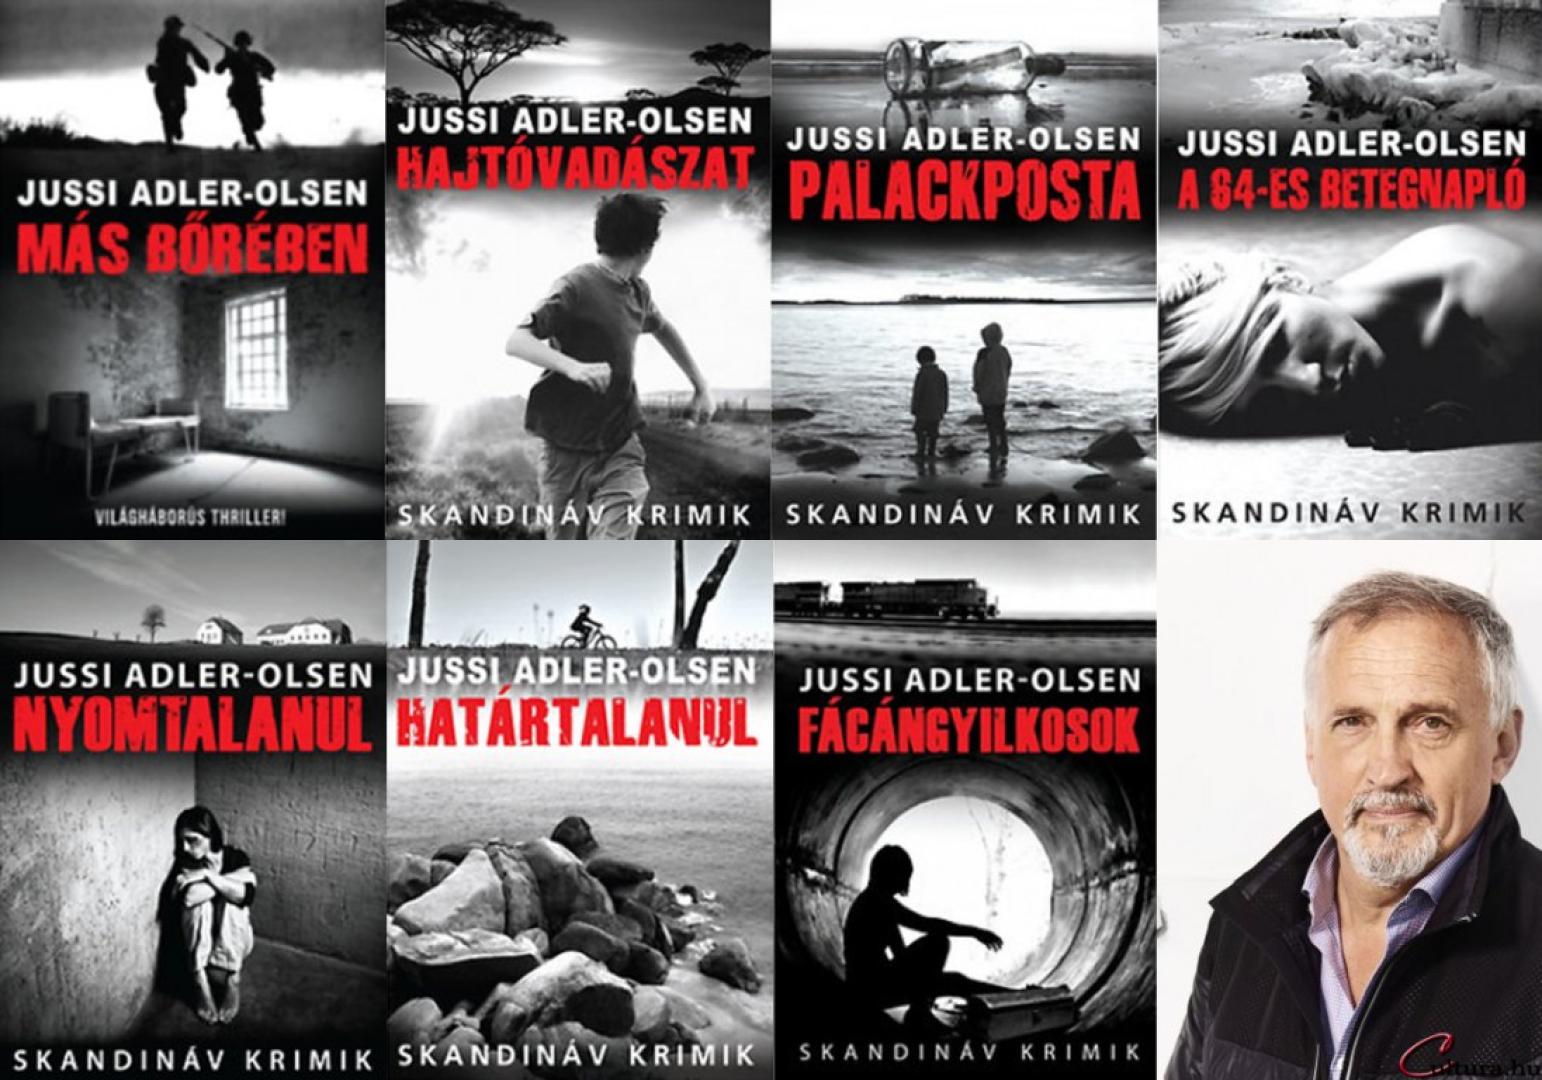 Jussi Adler-Olsen: A 64-es betegnapló (2010)